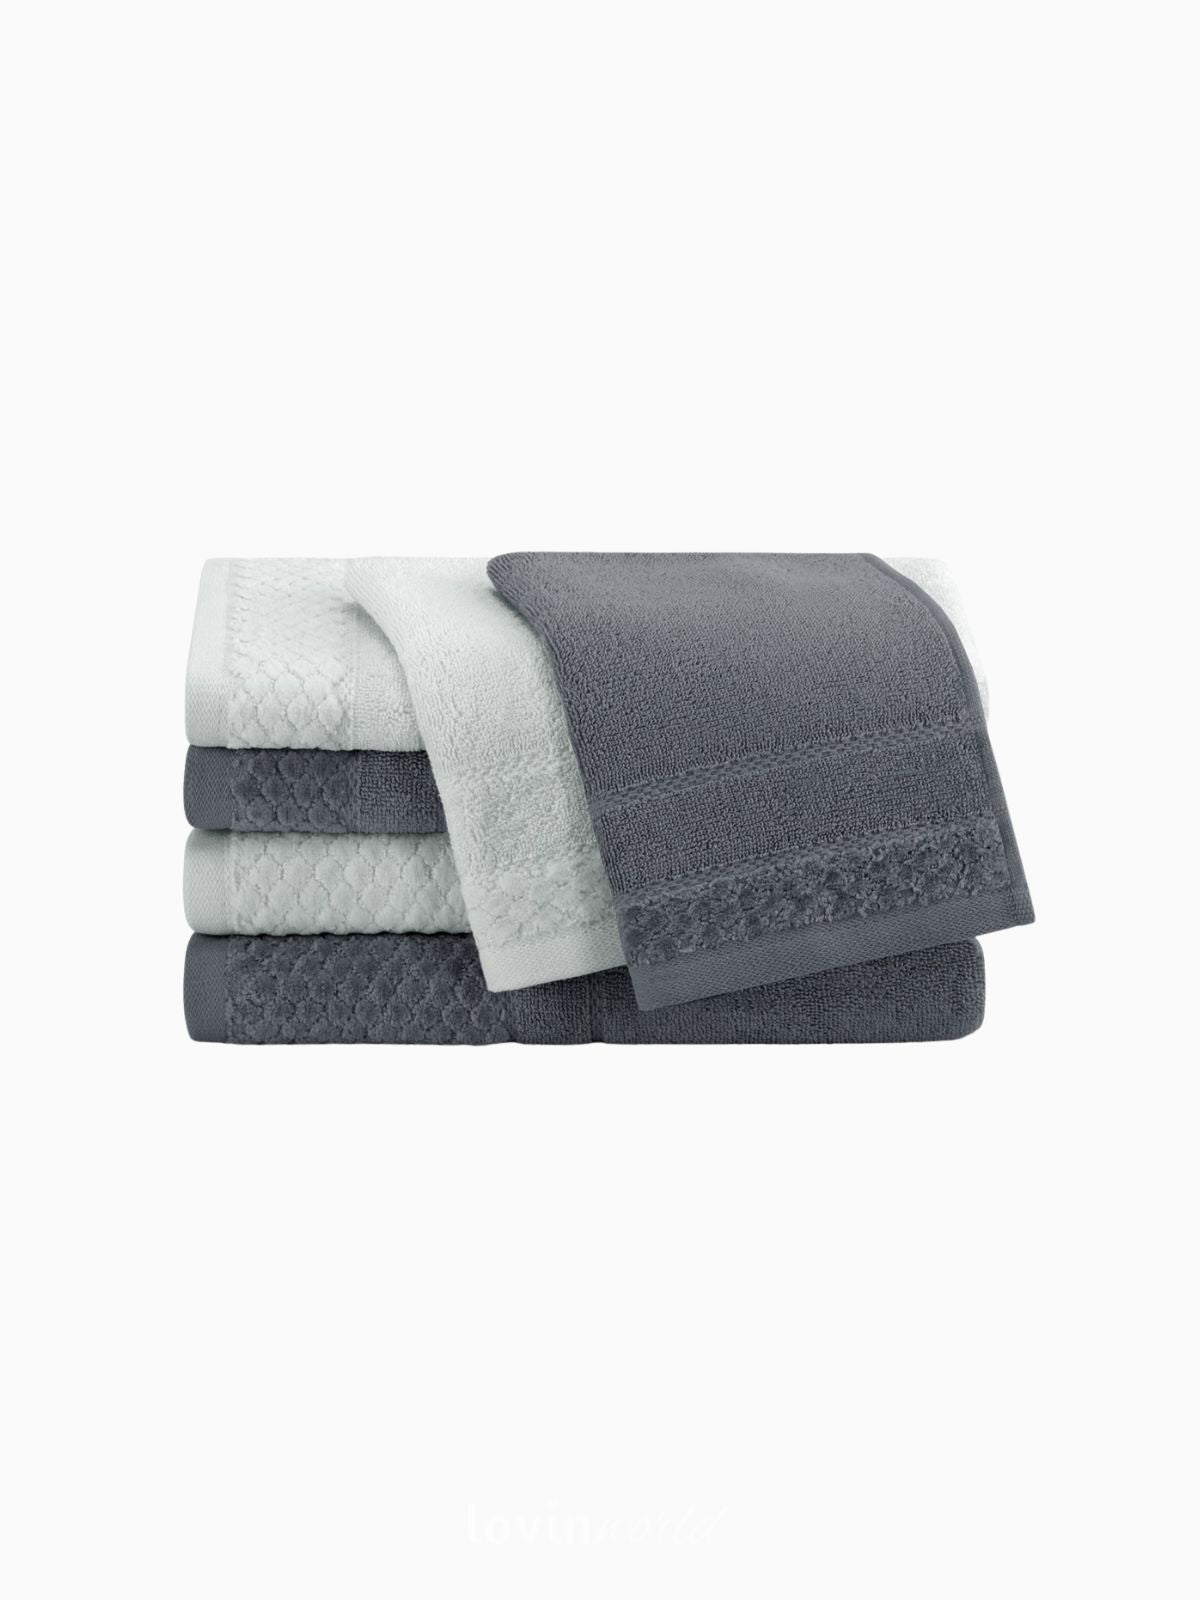 Set 6 Asciugamani da bagno Rubrum in 100% cotone, colore grigio chiaro e scuro-2